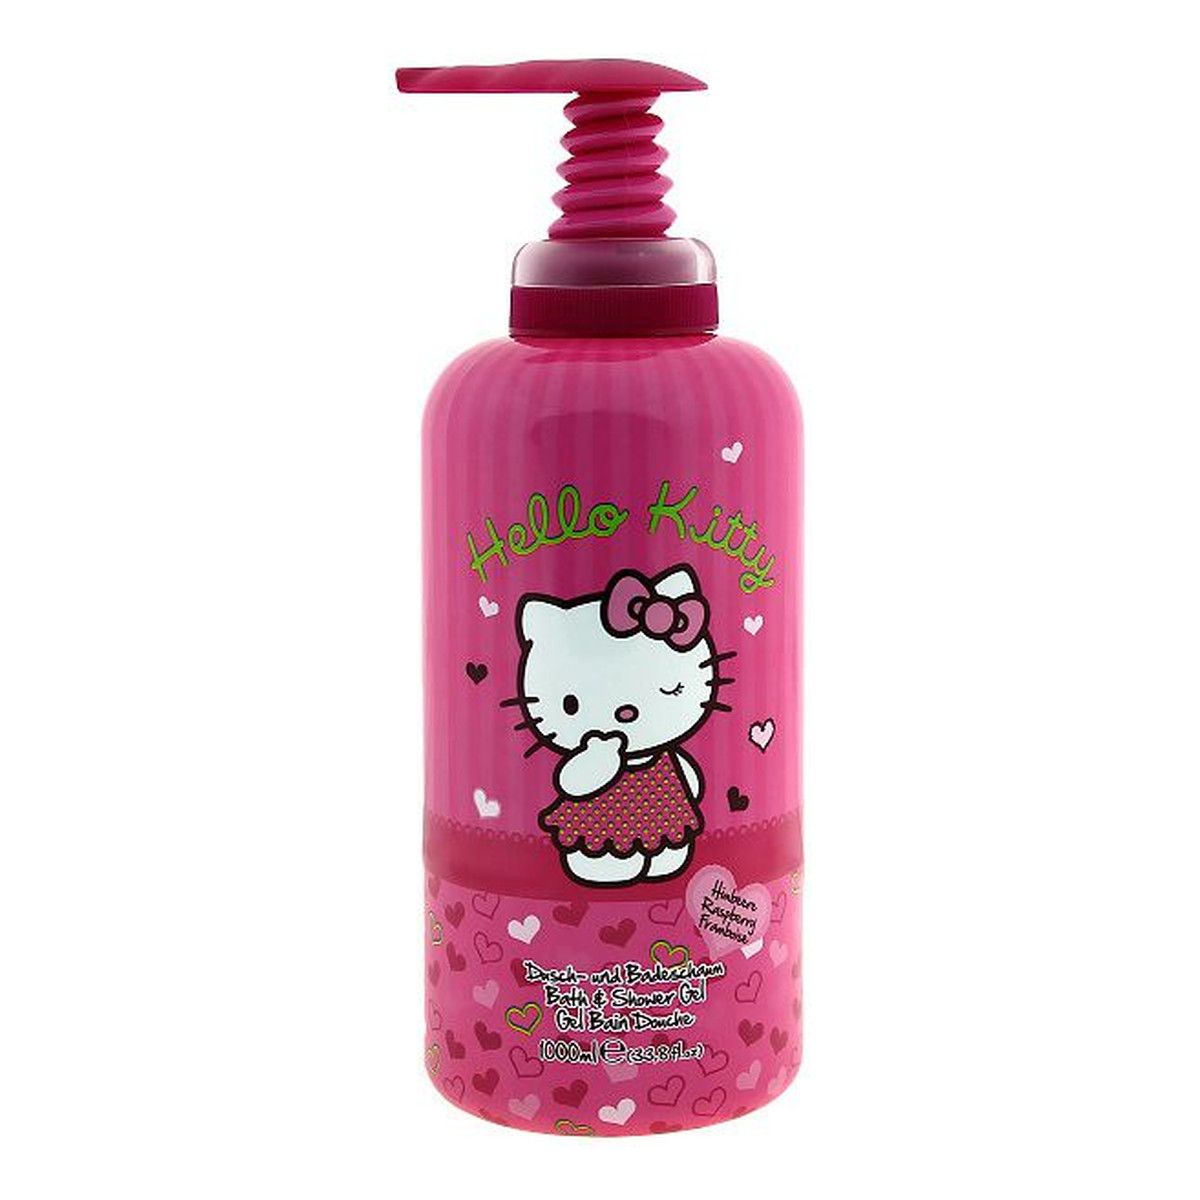 Beauty & Care Hello Kitty żel pod prysznic i do kąpieli Raspberry 1000ml